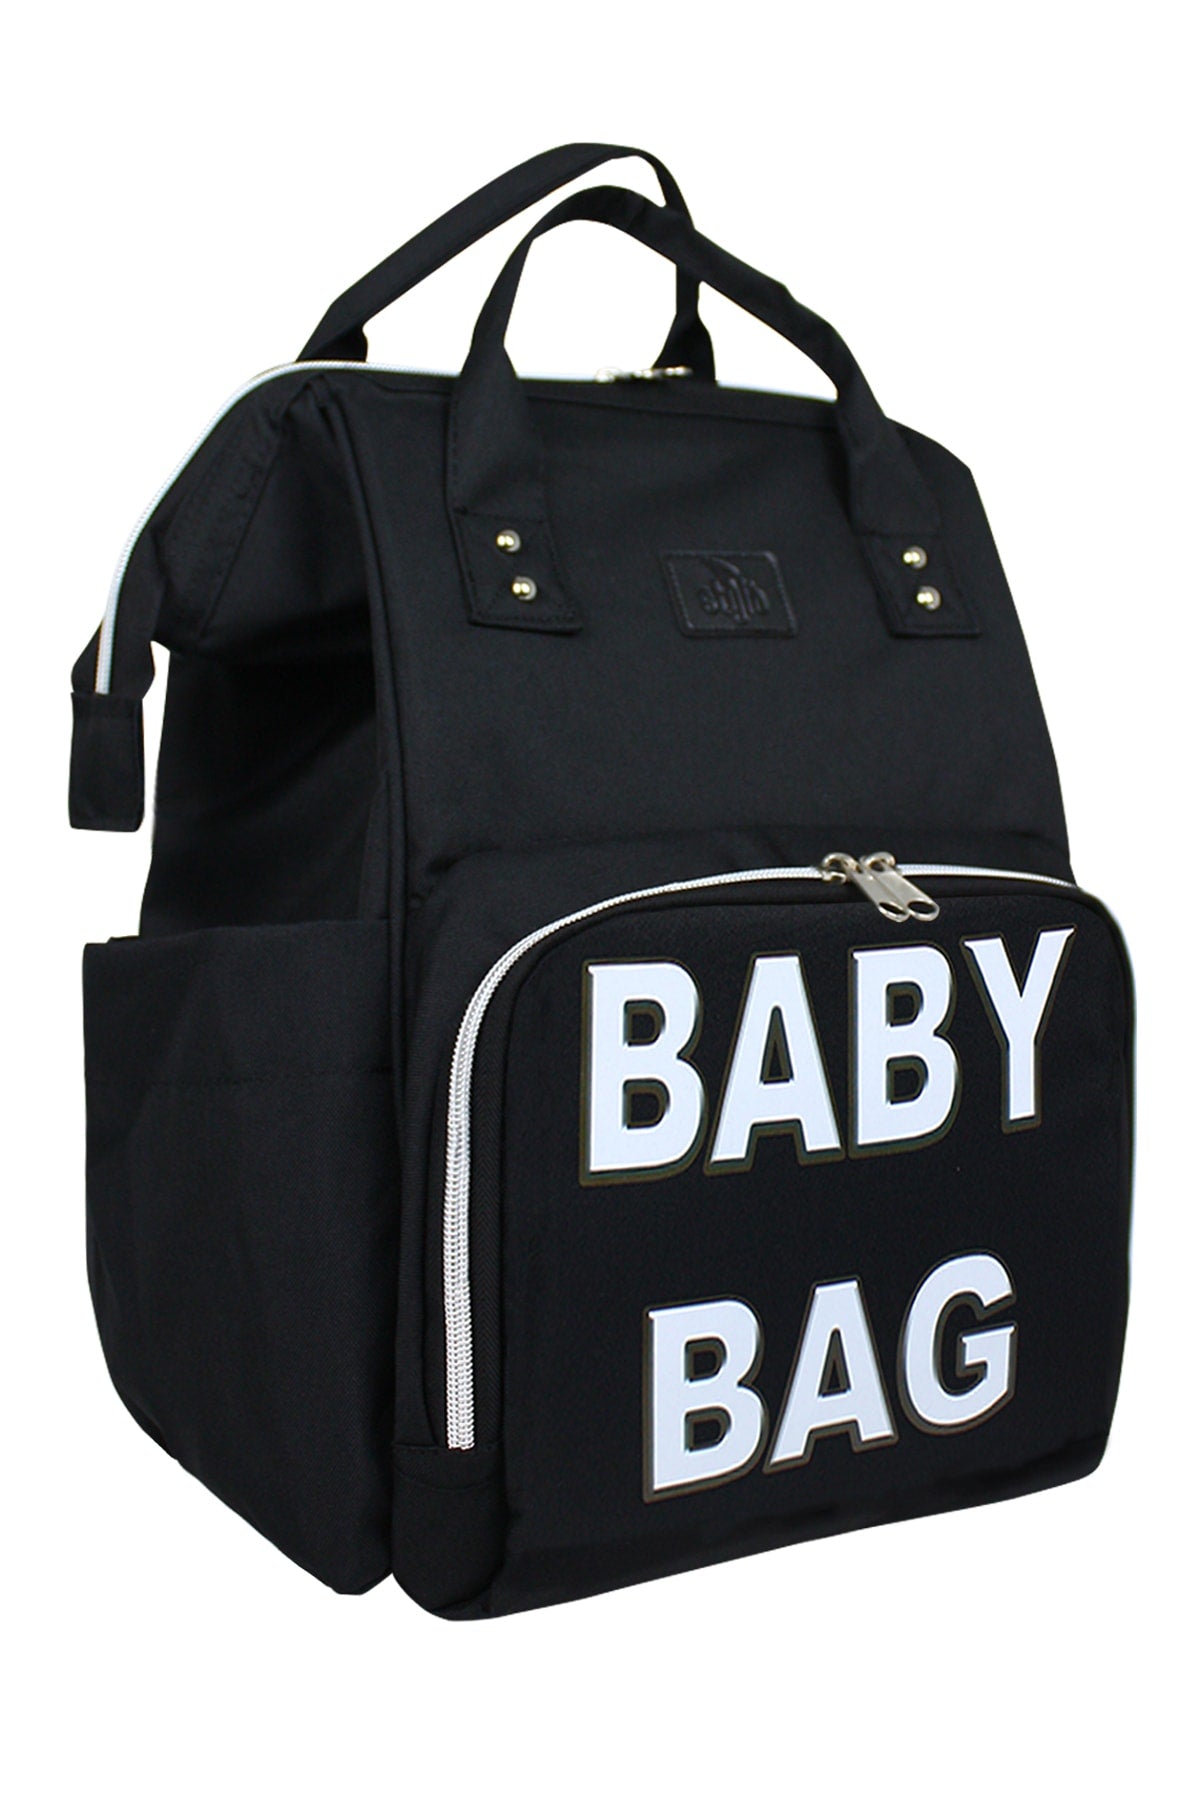 Paris Baby Bag Printed Mother Baby Bag